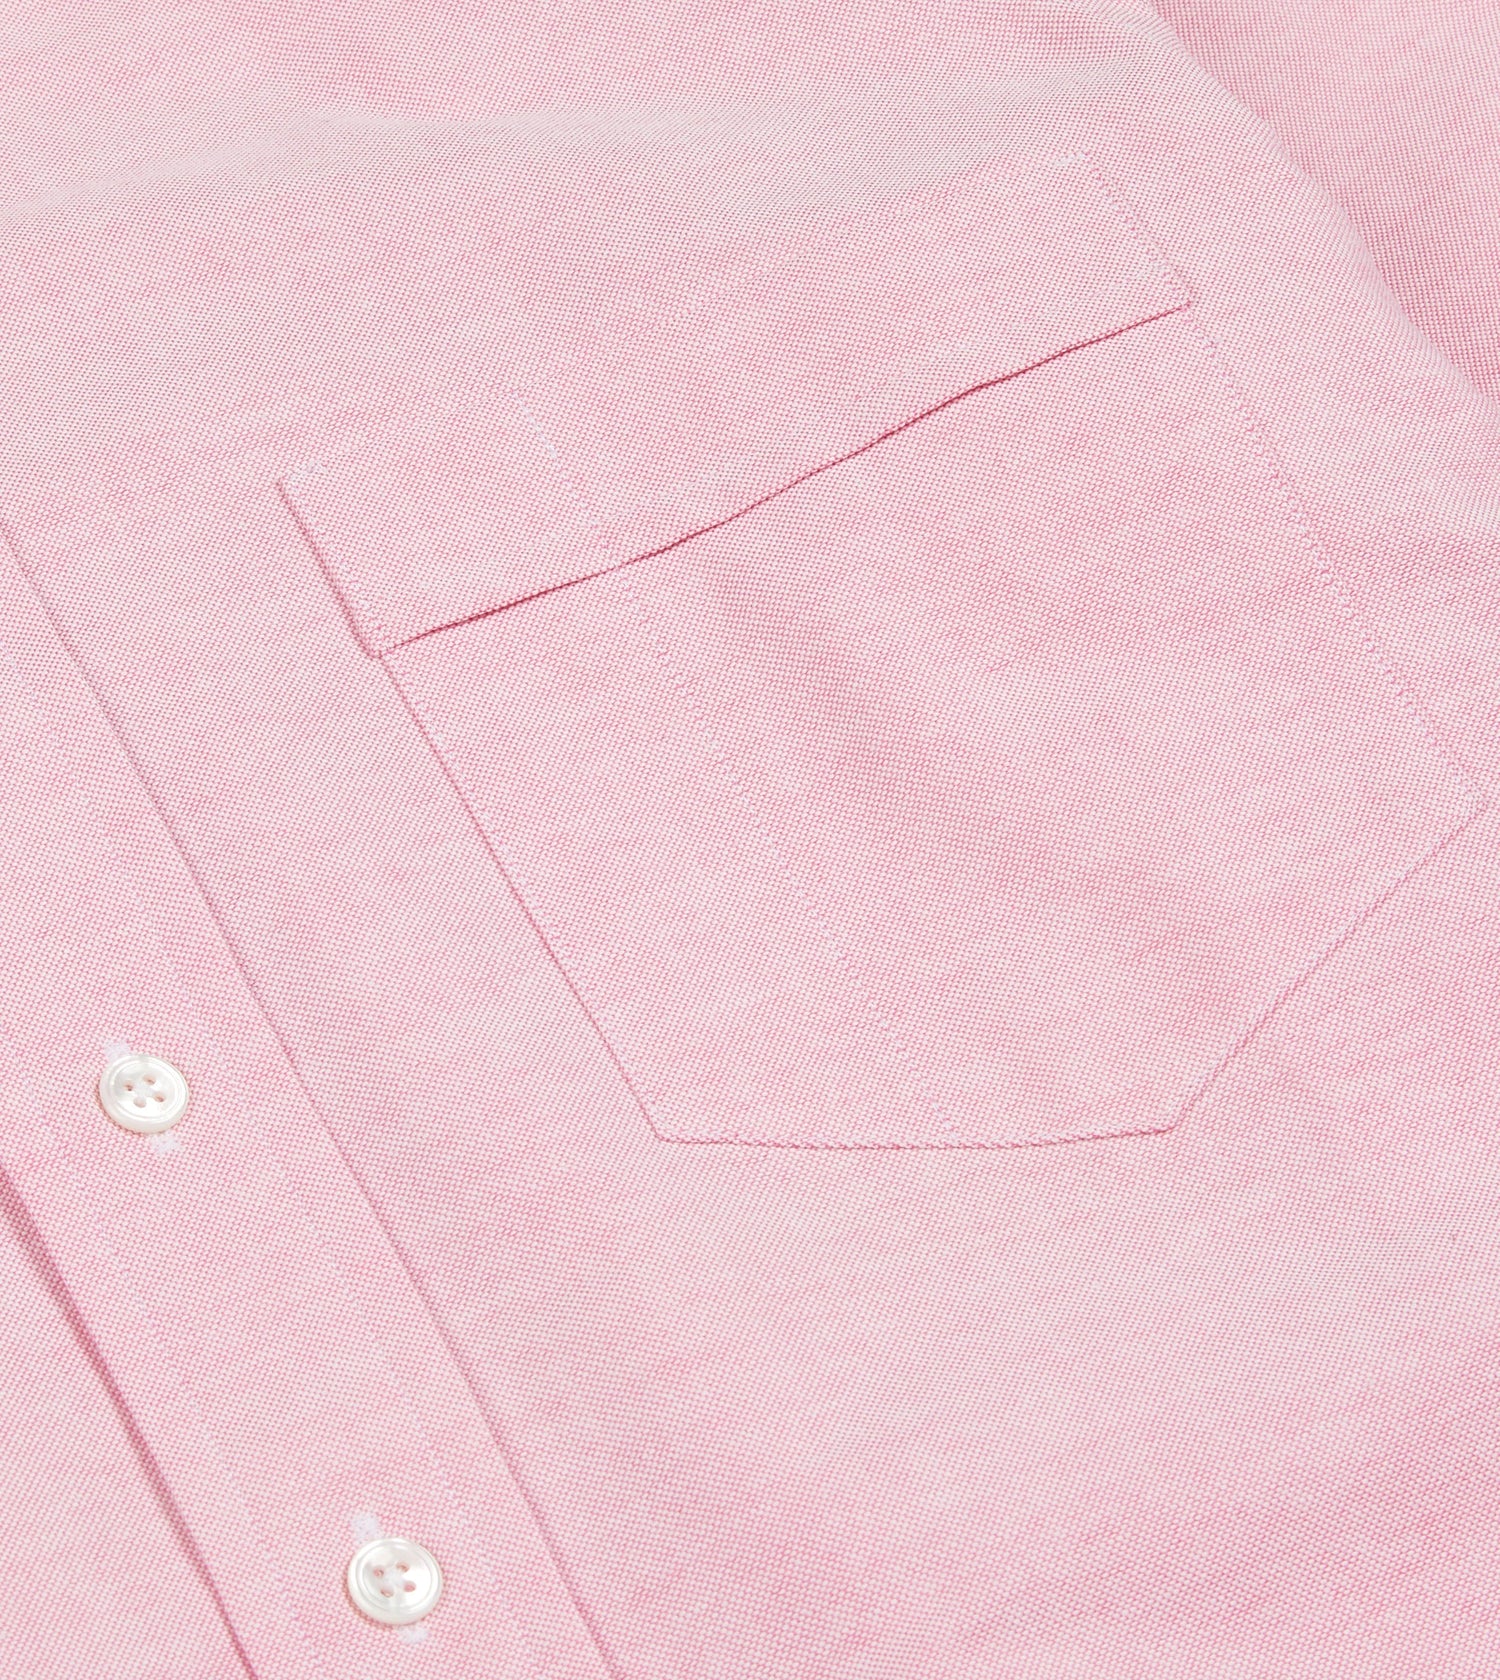 Dark Pink Cotton Oxford Cloth Button-Down Shirt